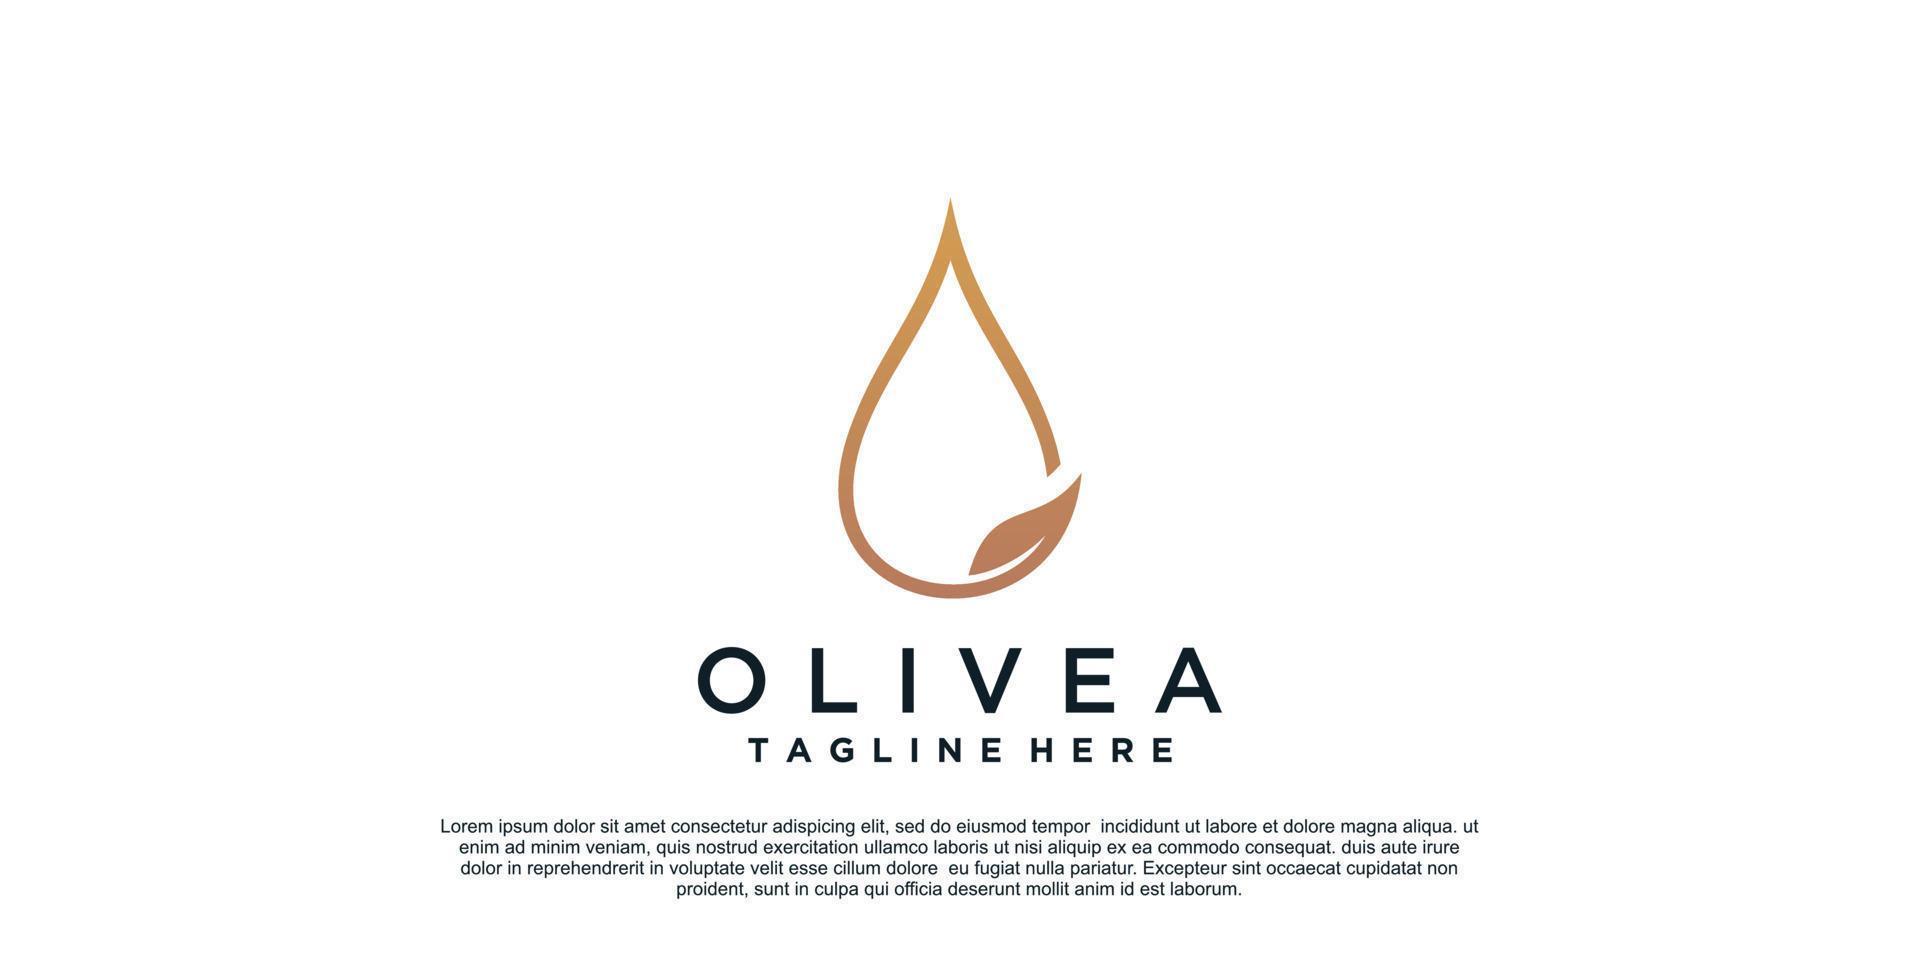 oliveira logotipo Projeto com simples conceito Prêmio vetor parte 1